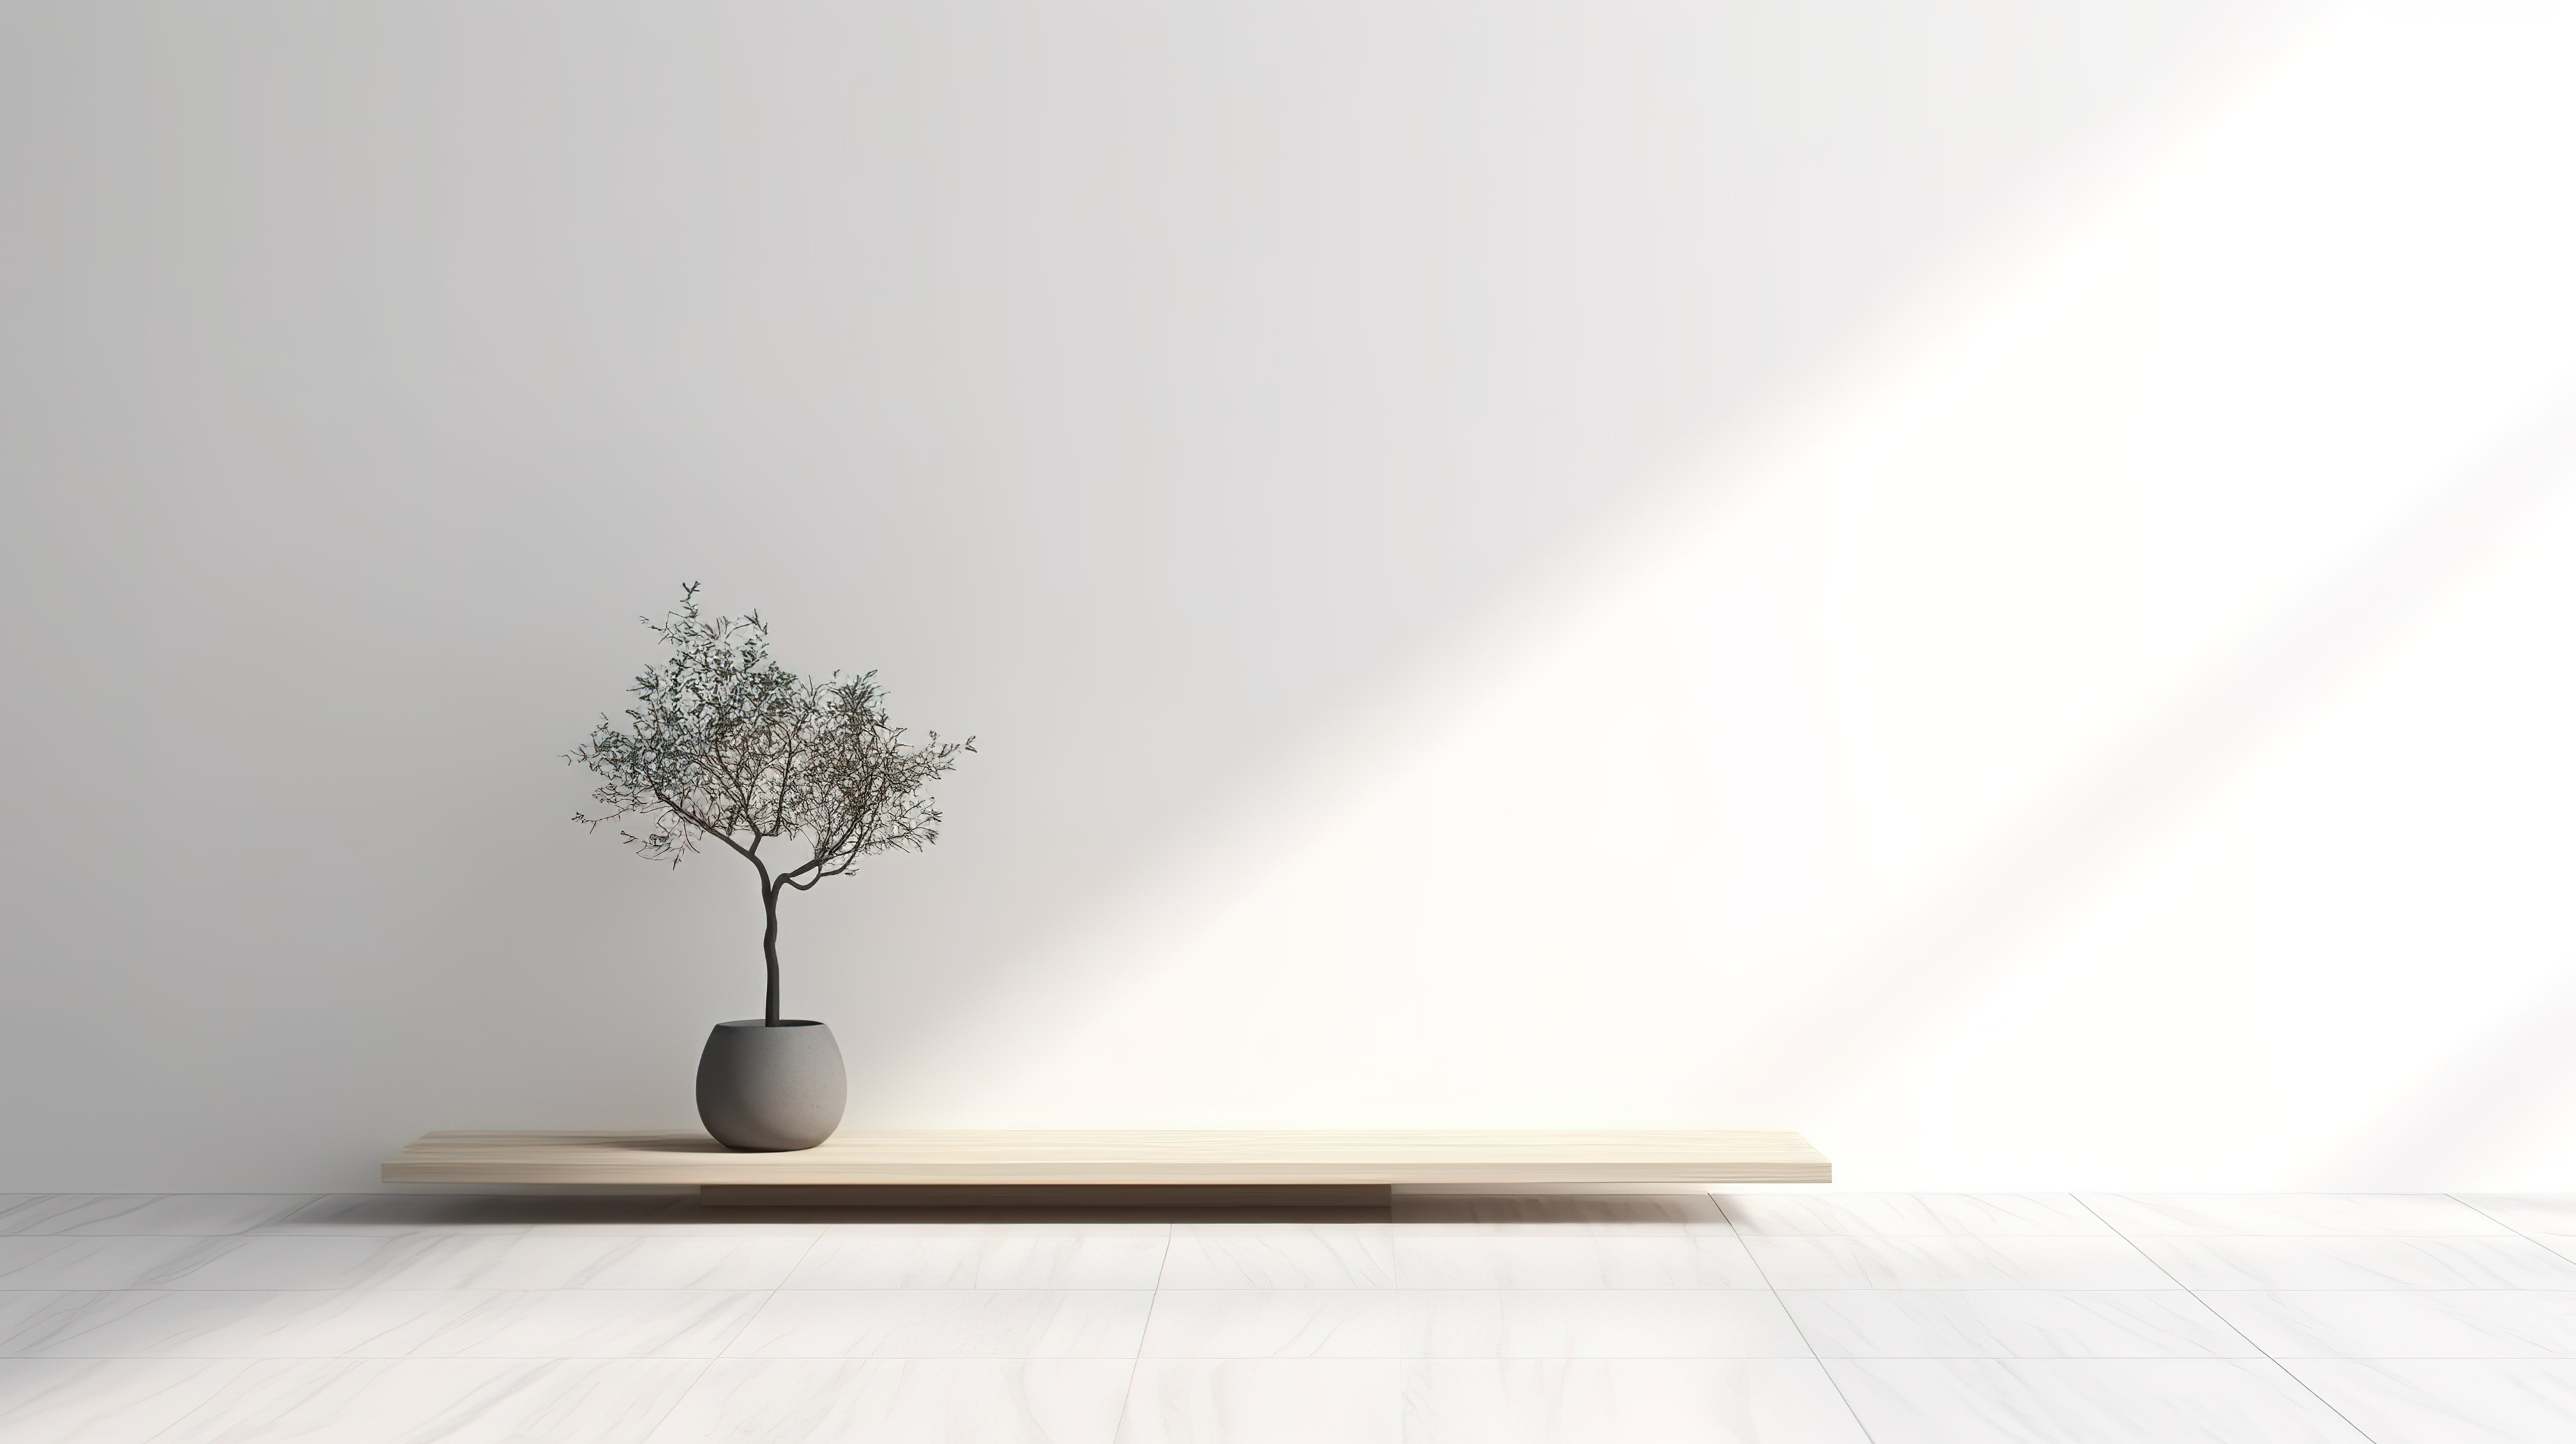 光滑的木桌，树影投射到白色瓷砖墙上，非常适合 3D 模型产品展示图片